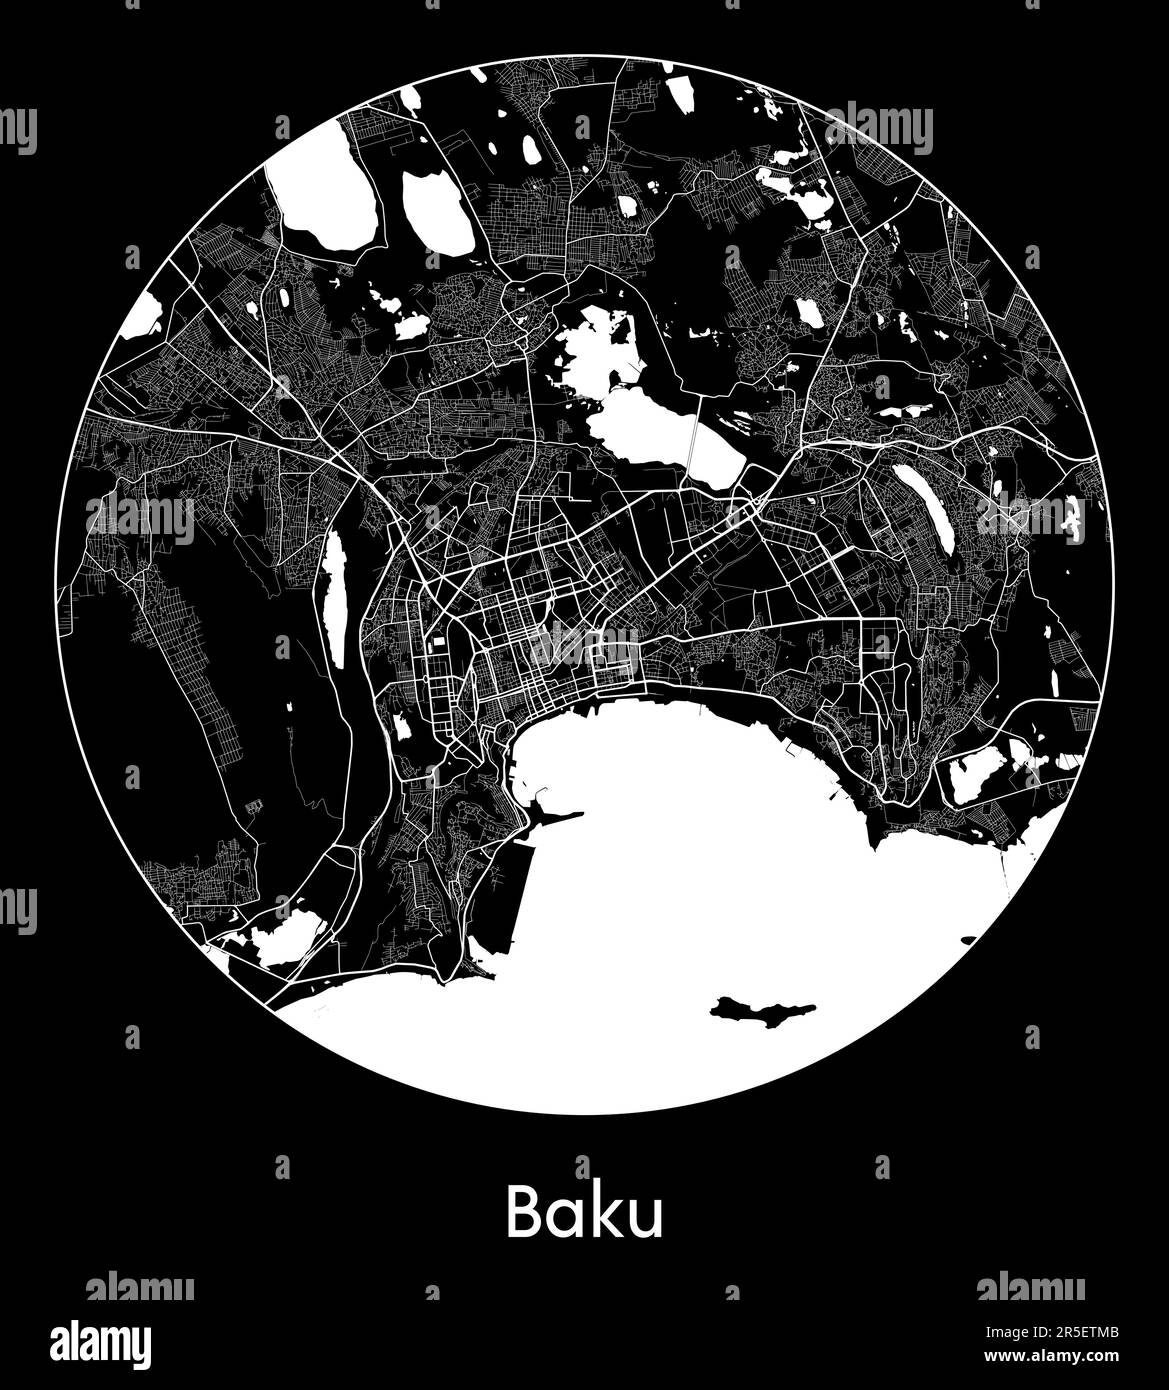 City Map Baku Azerbaijan Asia vector illustration Stock Vector